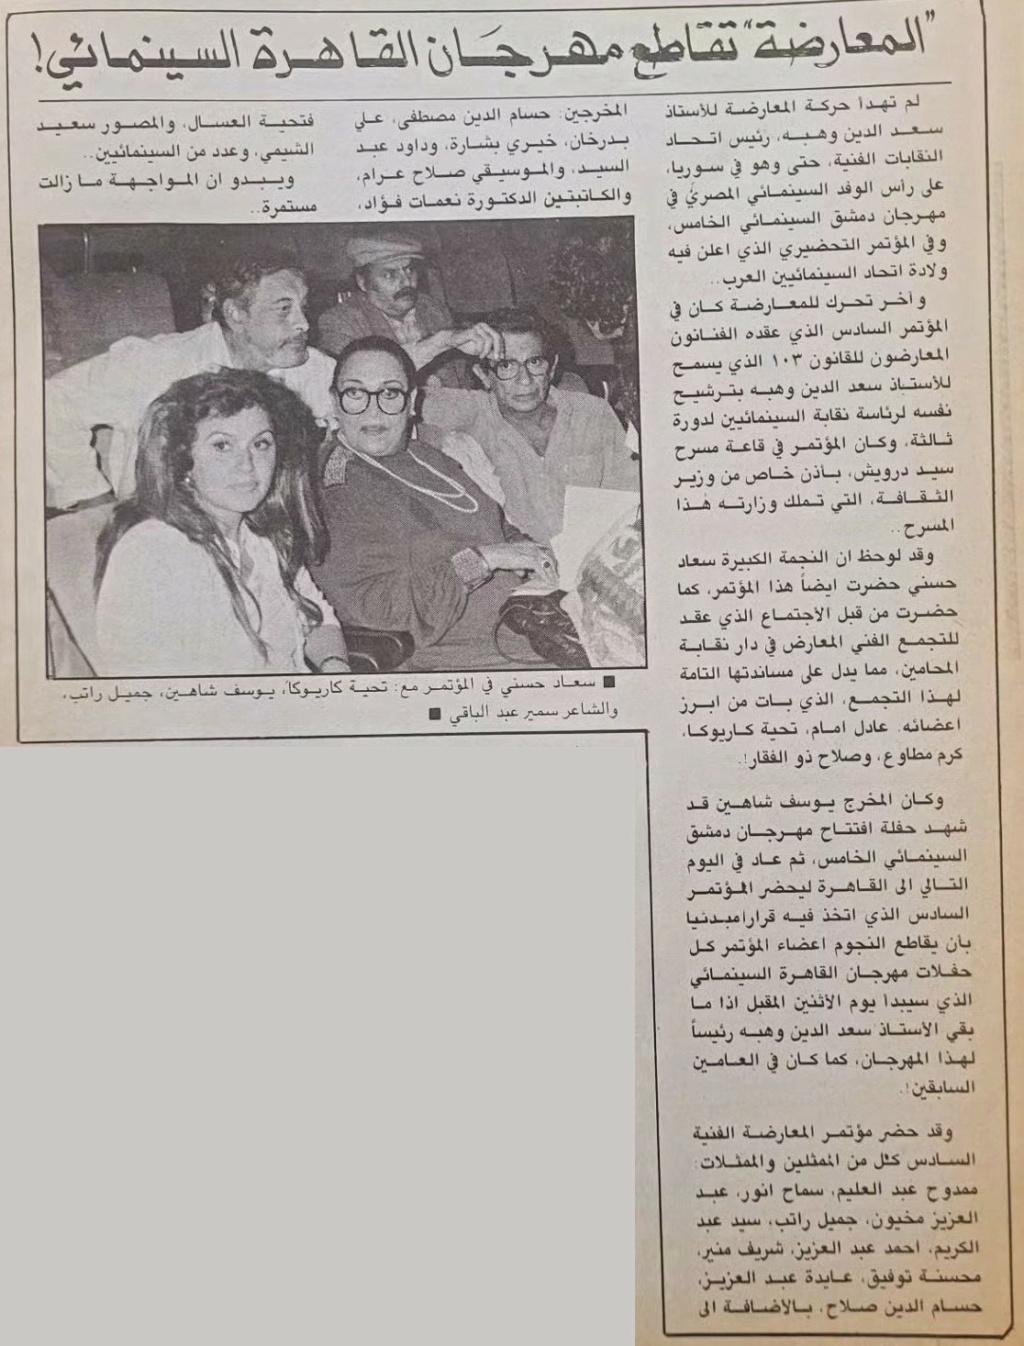 مقال صحفي : المعارضة .. تقاطع مهرجان القاهرة السينمائي ! 1987 م Aao_oa10